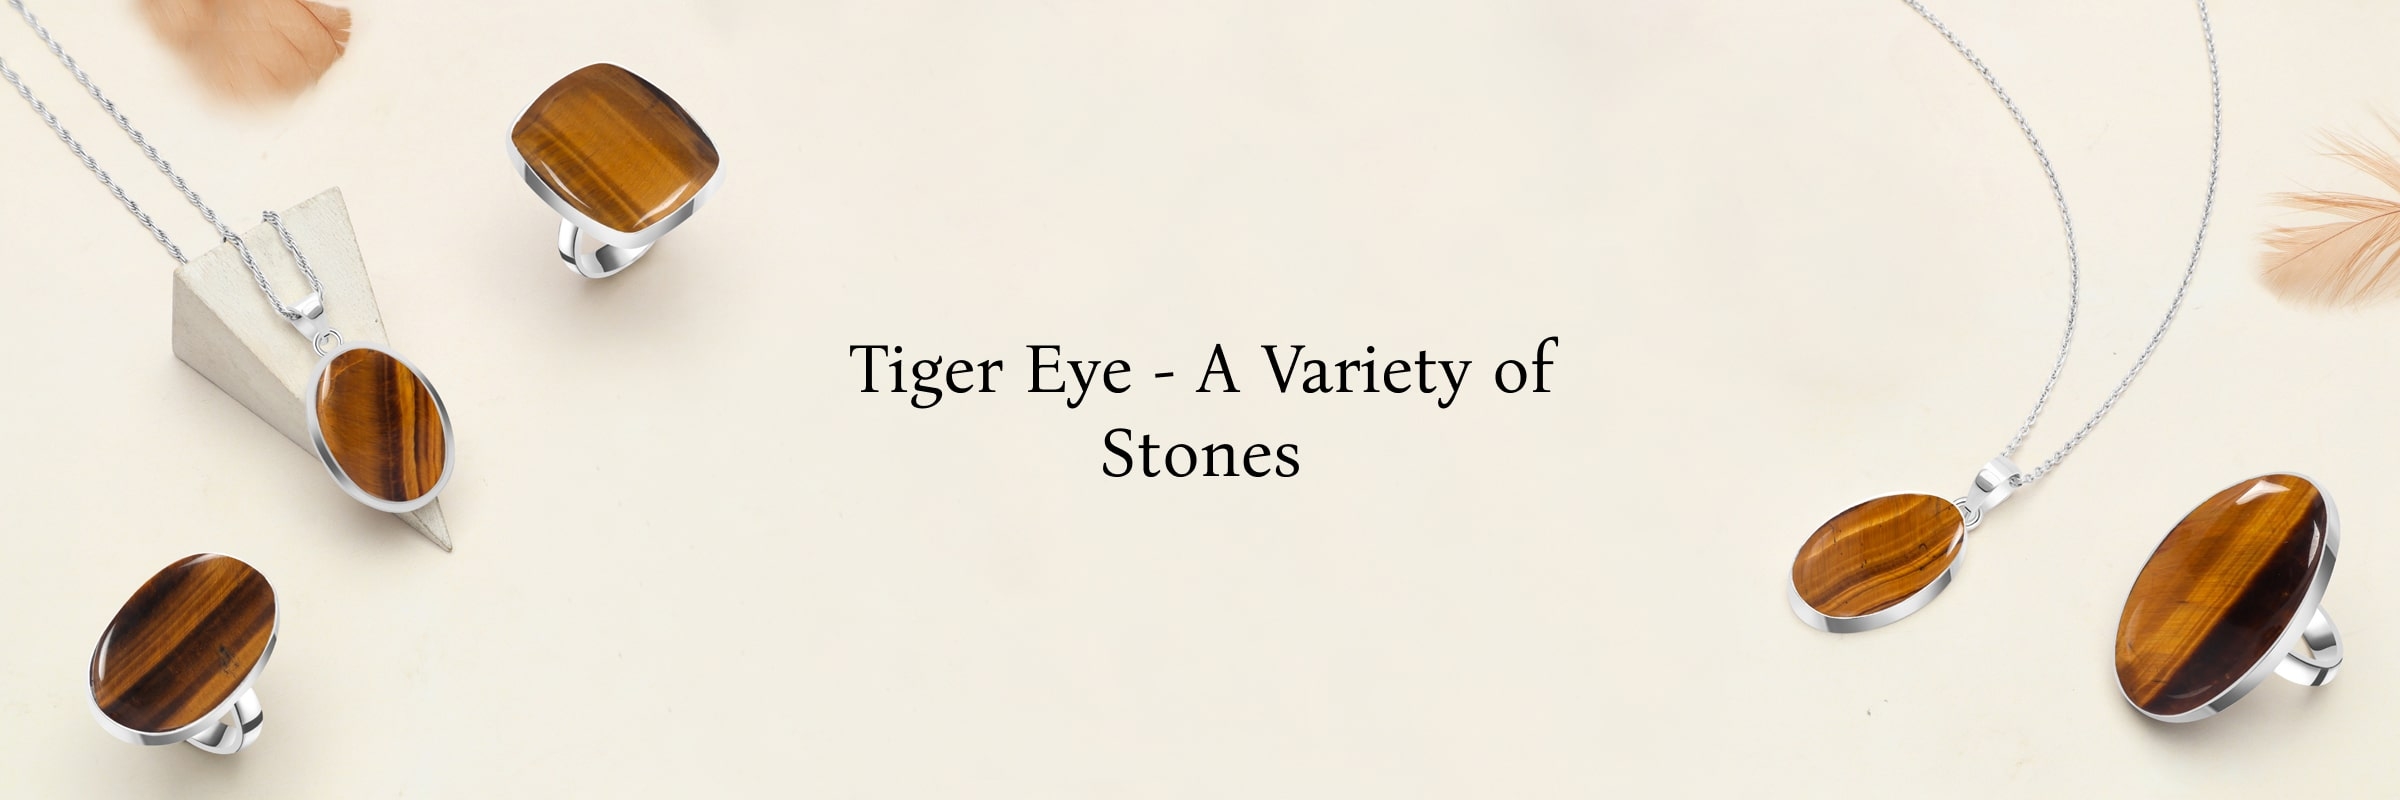 Types of Tiger Eye Stone